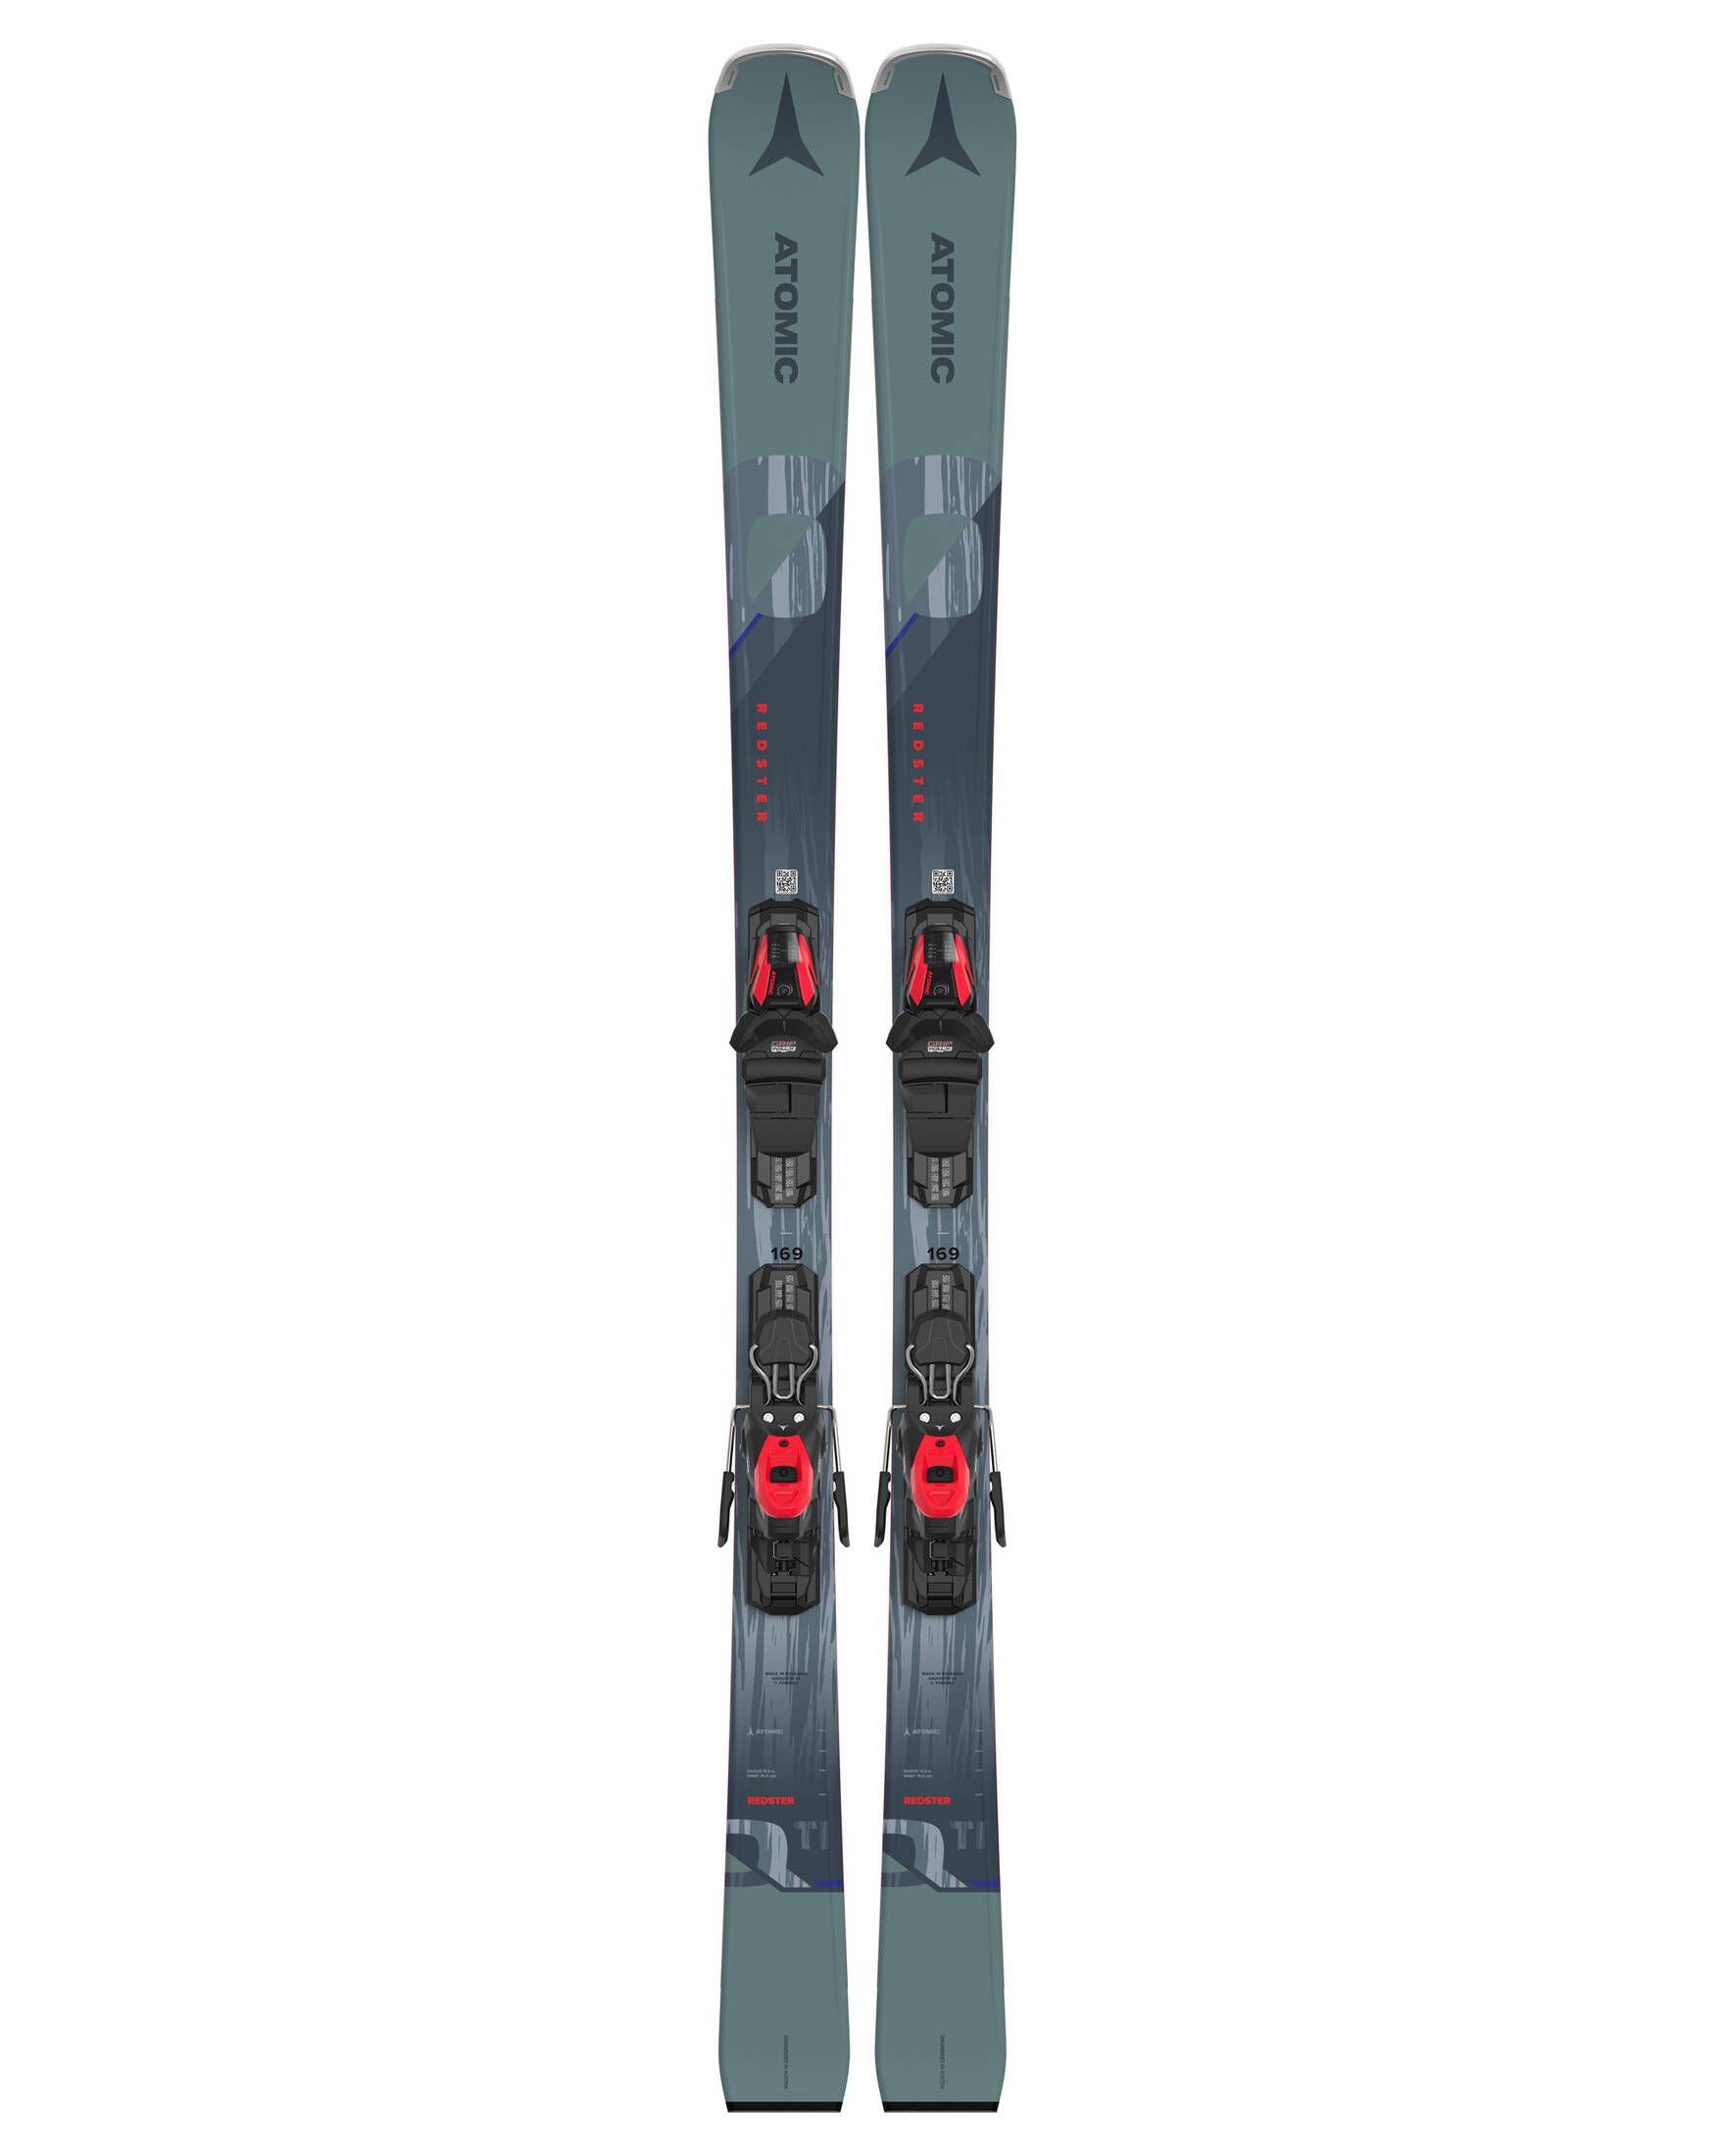 Atomic Ski Skier REDSTER Q TI + M 10 GW